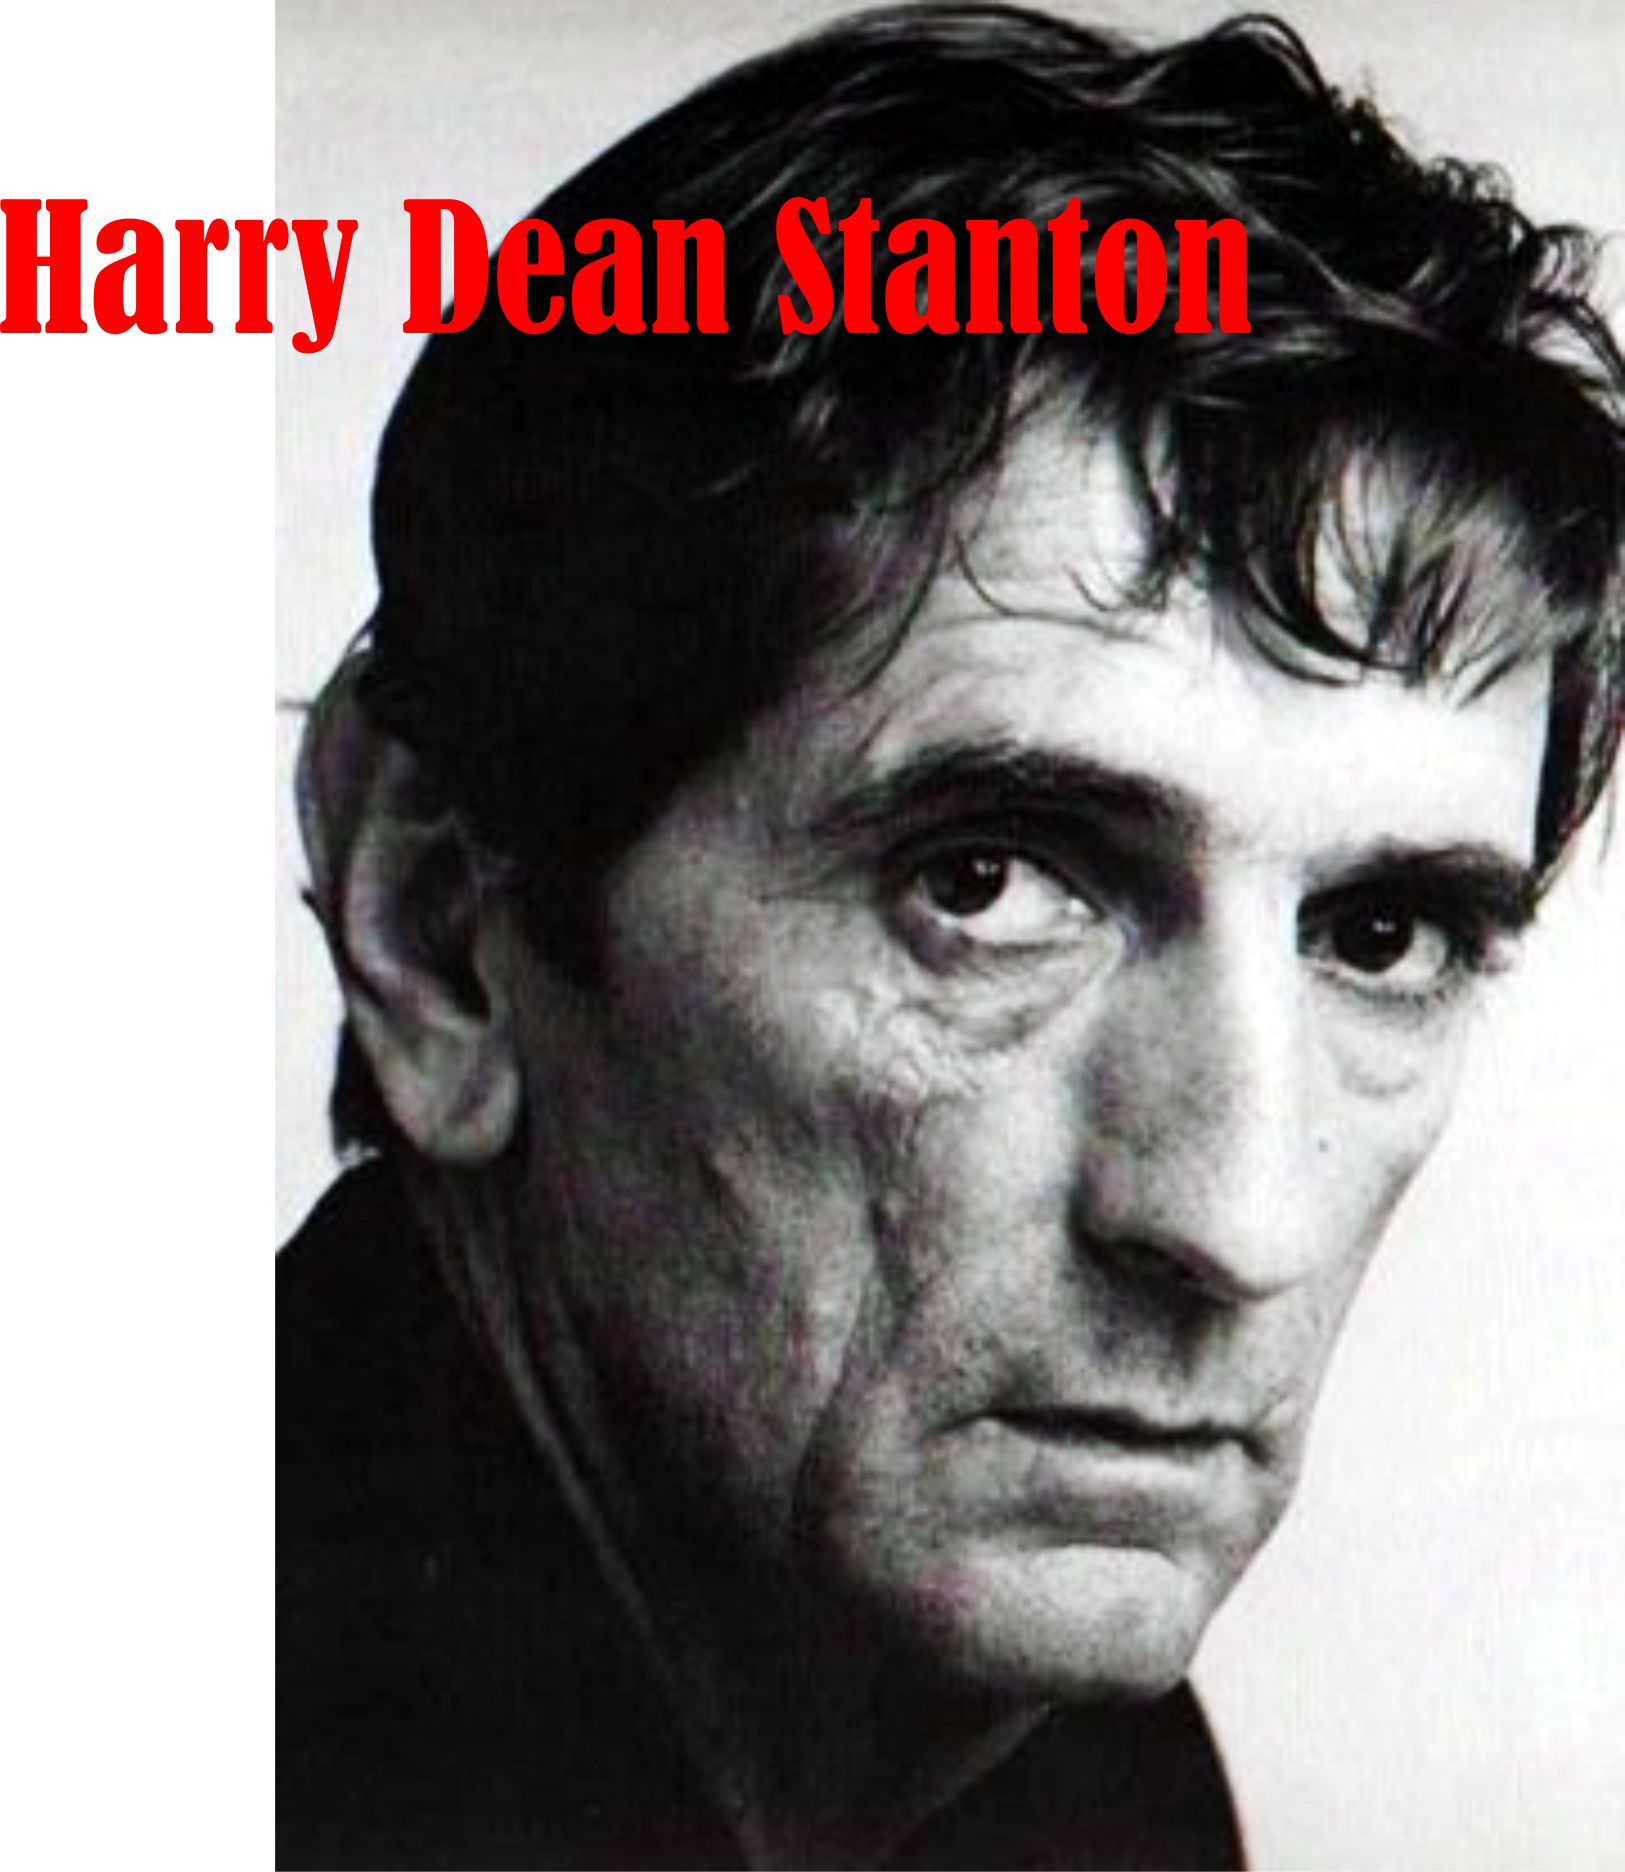 HARRY DEAN STANTON 12